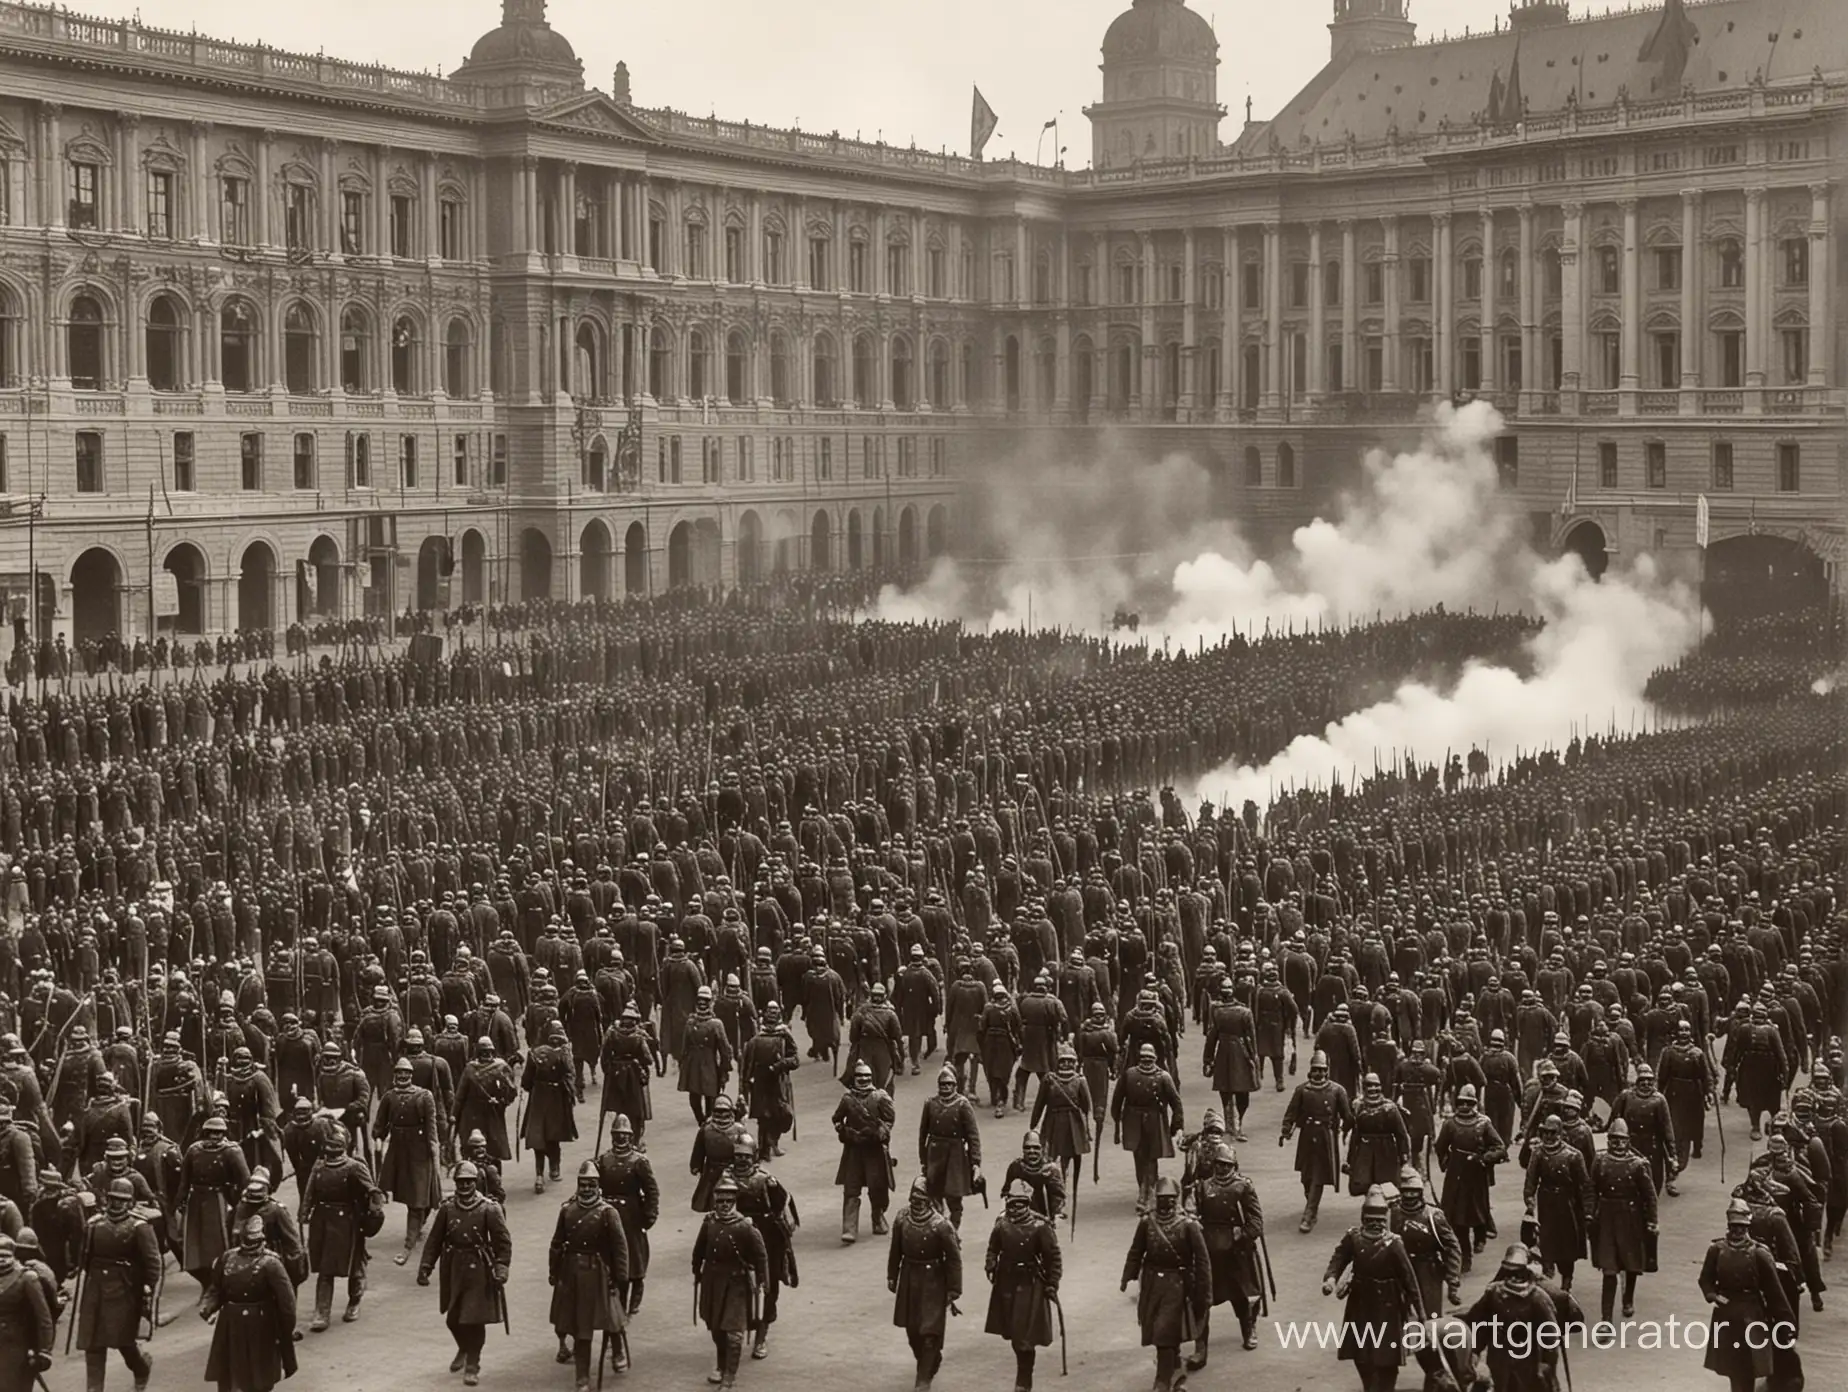 Имперская армия штурмует парламент, фото 1900 года